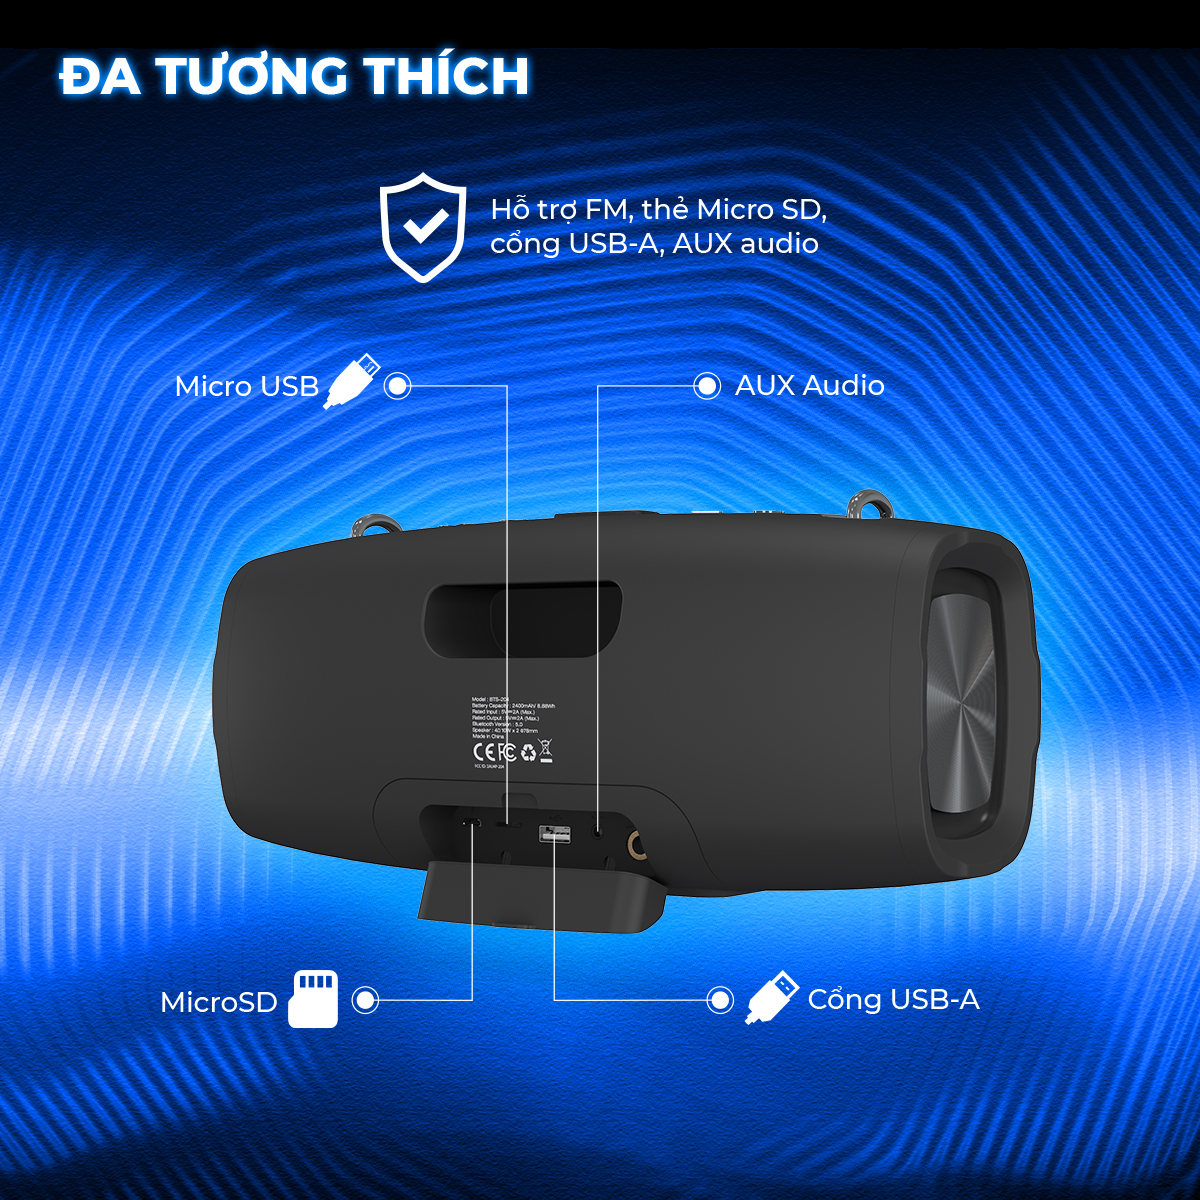 Loa Bluetooth di động Energizer BTS-204 kiêm sạc dự phòng kèm Micro Karaoke - Kết nối bluetooth 5.0, hỗ trợ FM radio, thẻ Micro SD, cổng sạc USB-A - HÀNG CHÍNH HÃNG